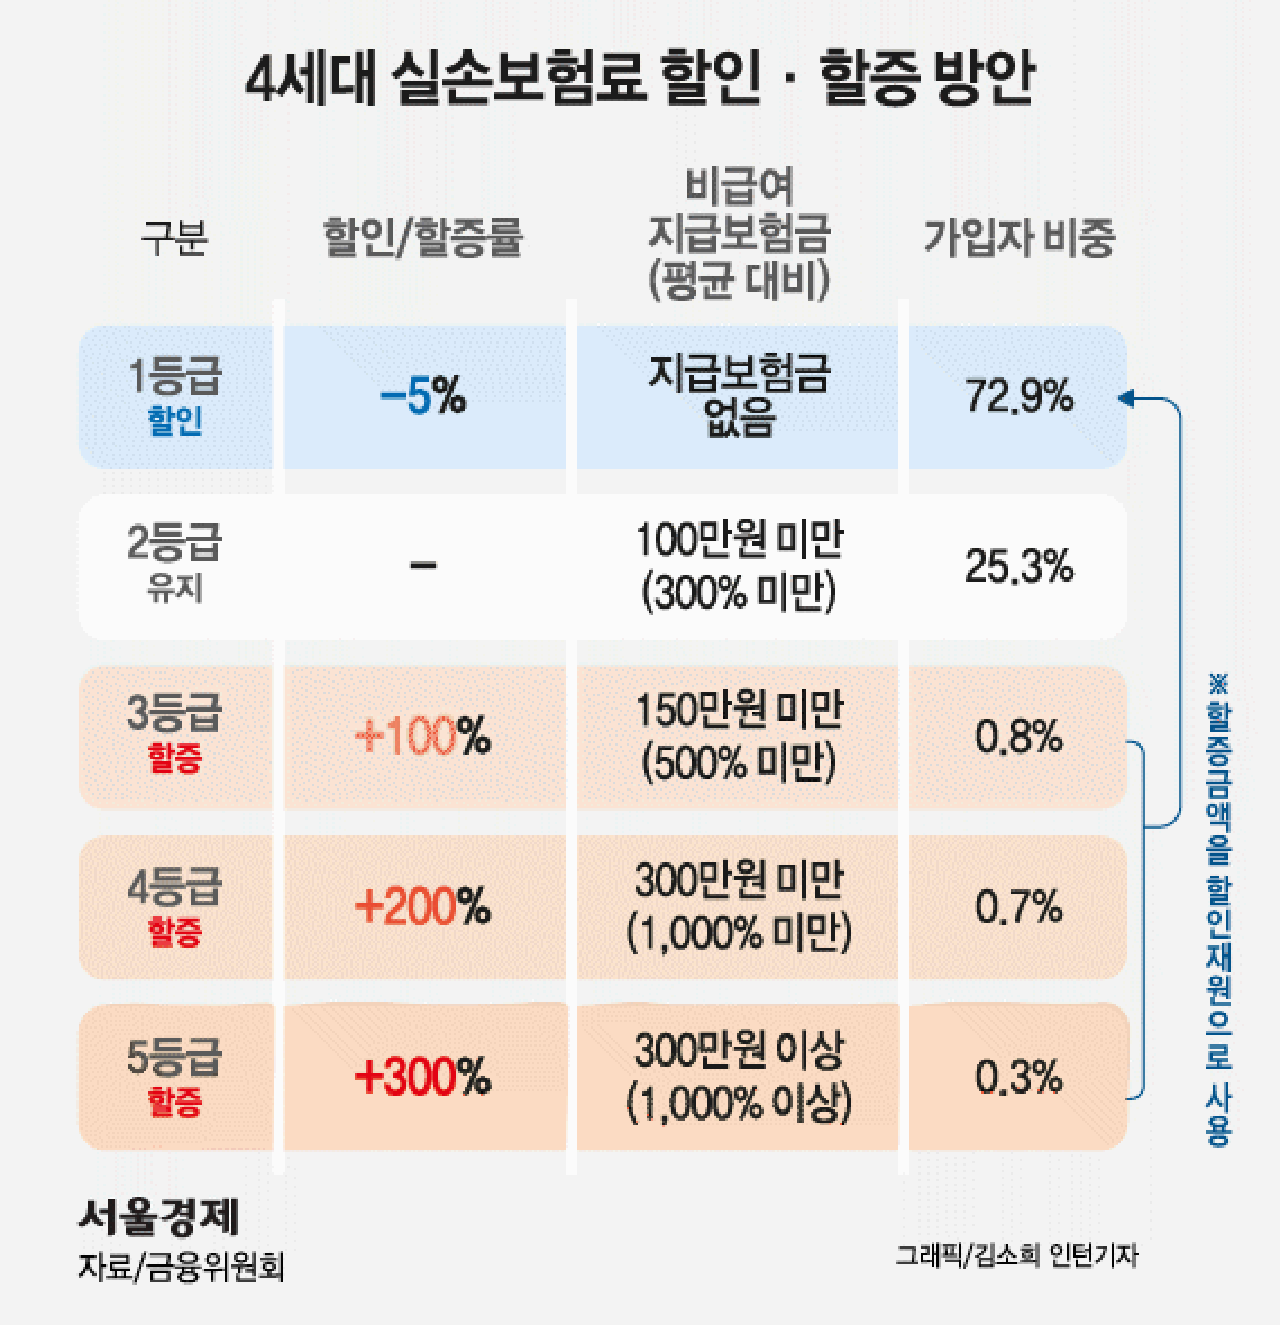 4세대 실손보험료 할인·할증 방안./서울경제DB